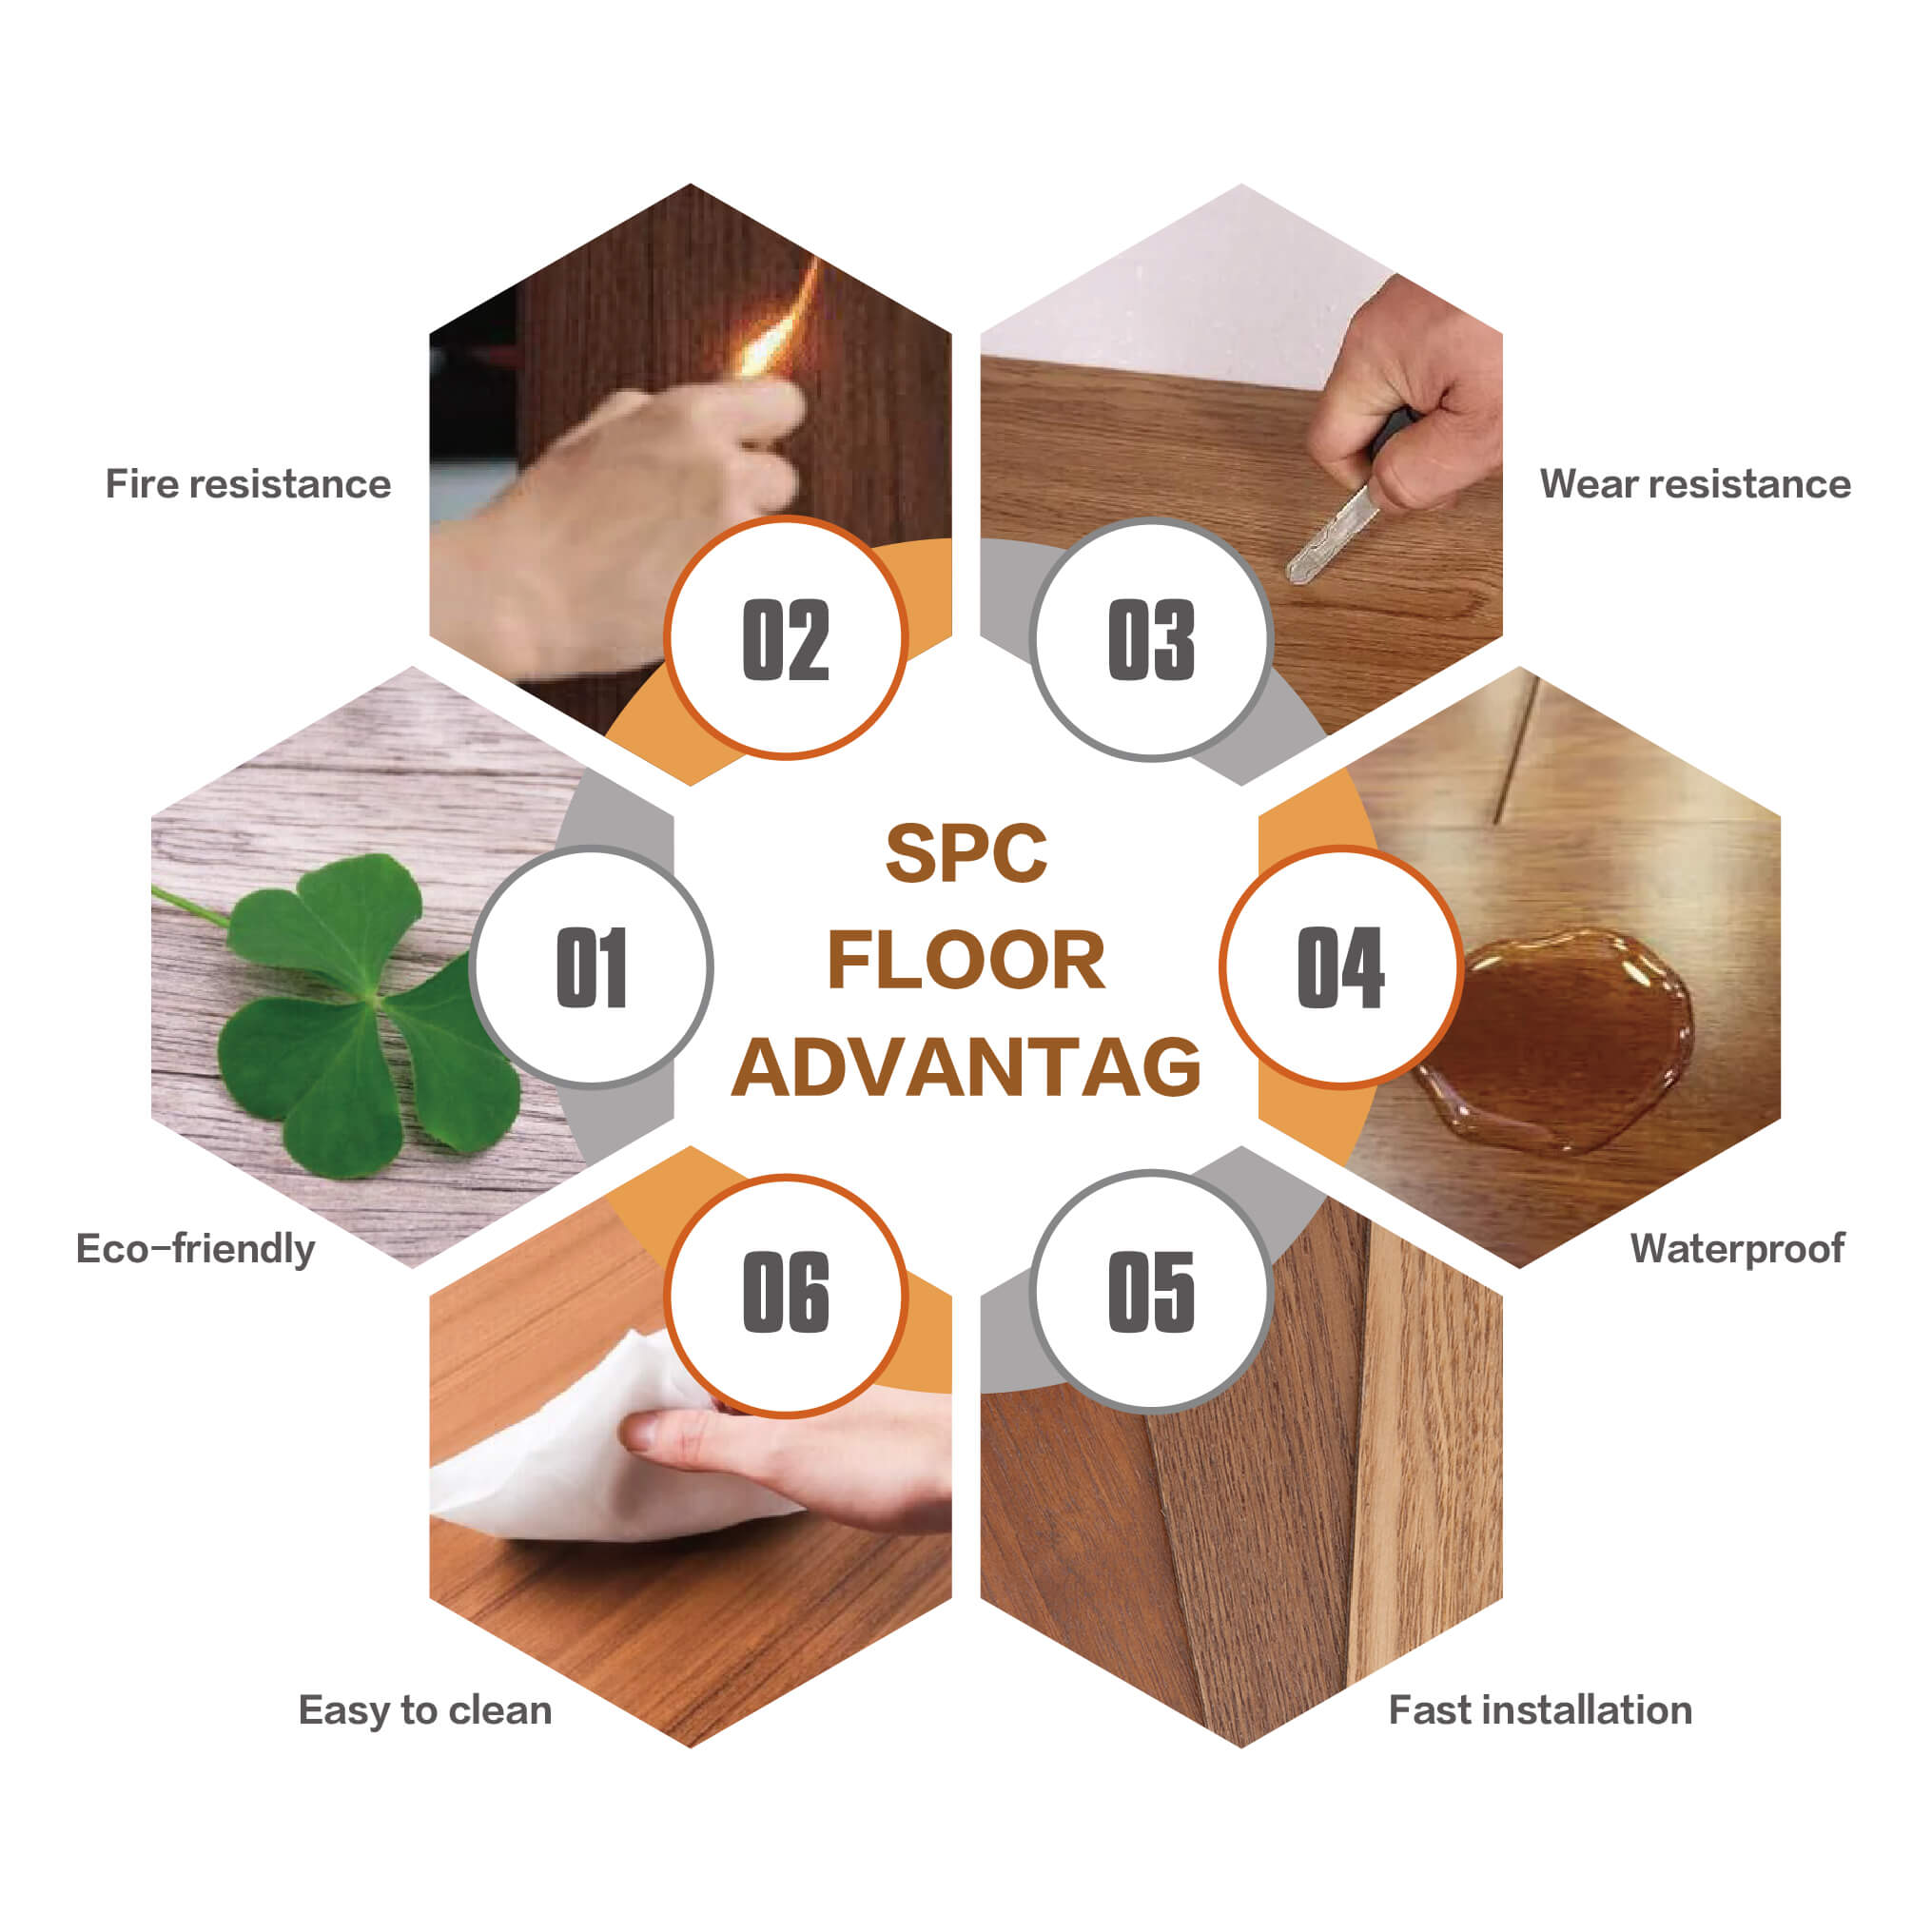 Advantages of SPC Flooring